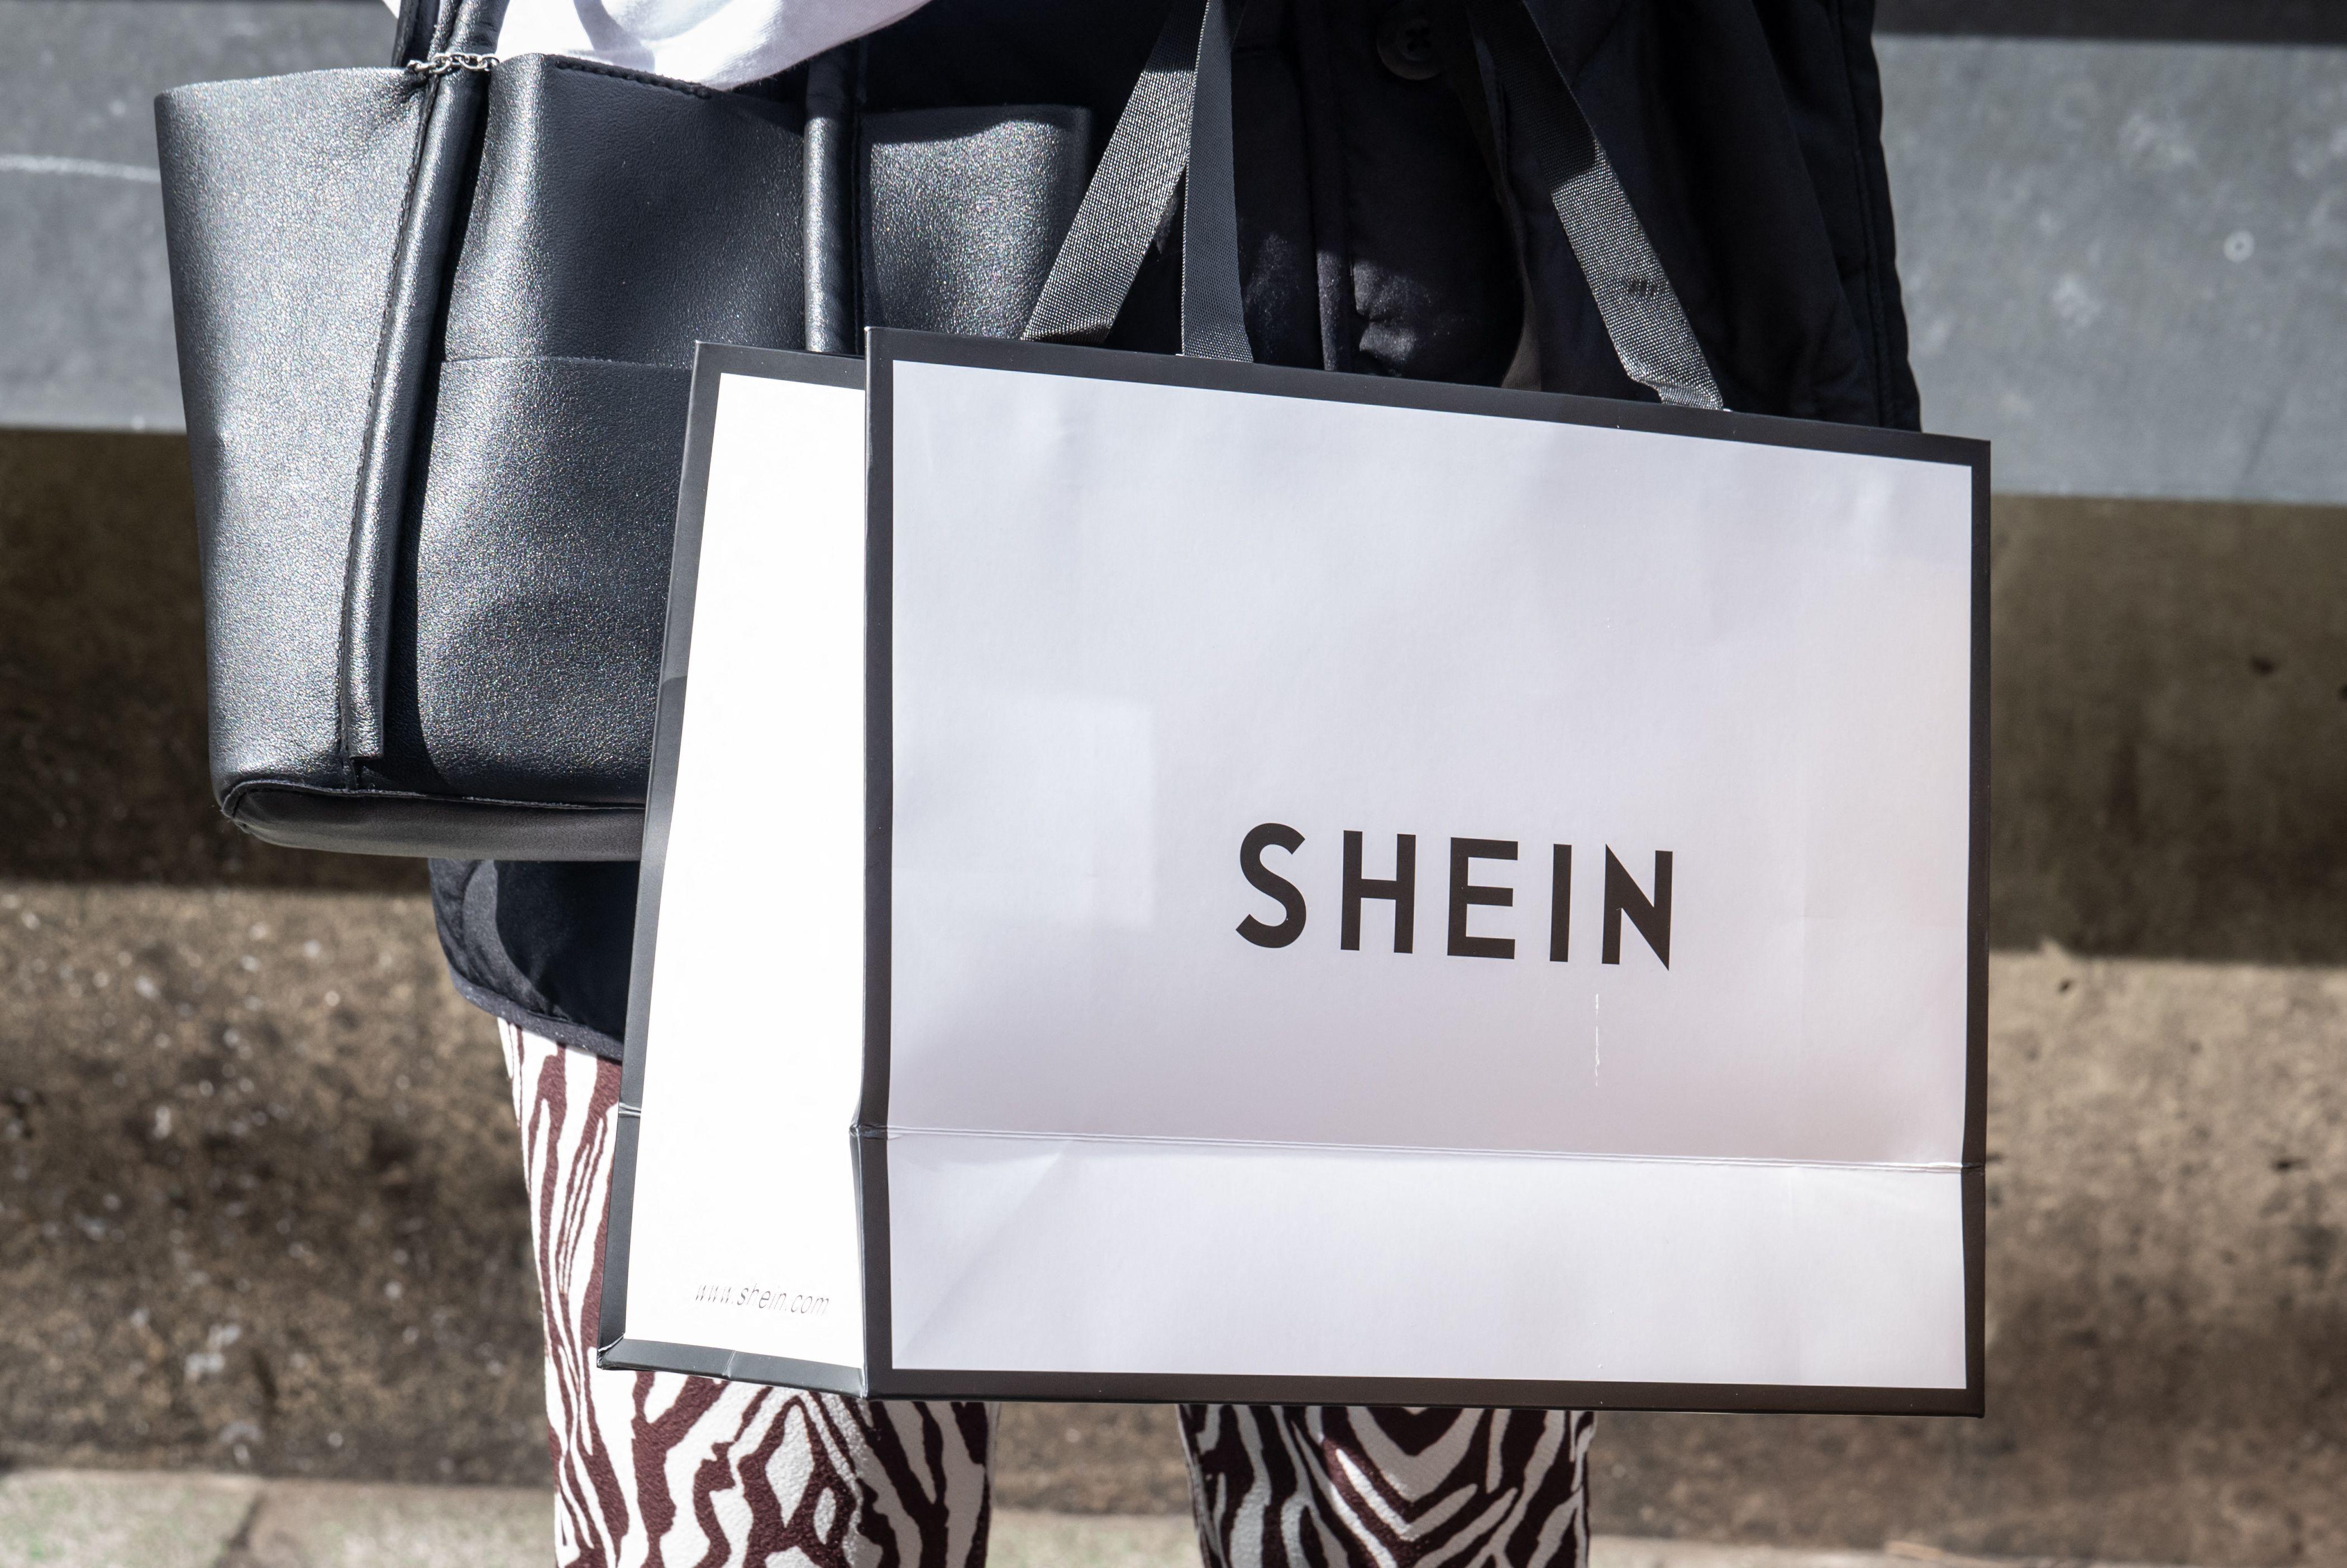 Shein no Brasil: loja temporária da marca teve filas e confusões